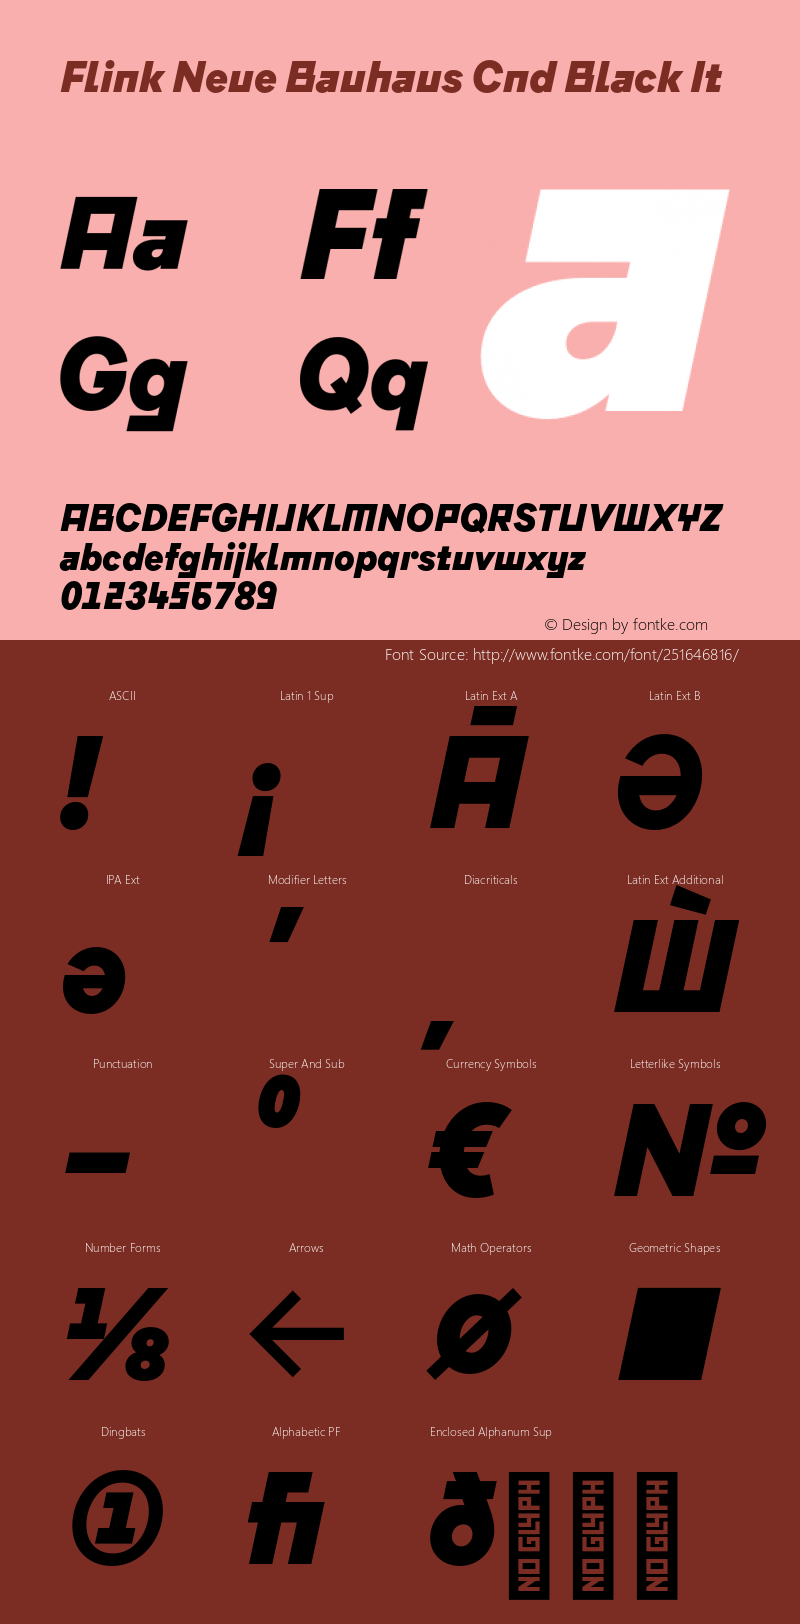 Flink Neue Bauhaus Cnd Black It Version 2.100;Glyphs 3.1.2 (3150)图片样张